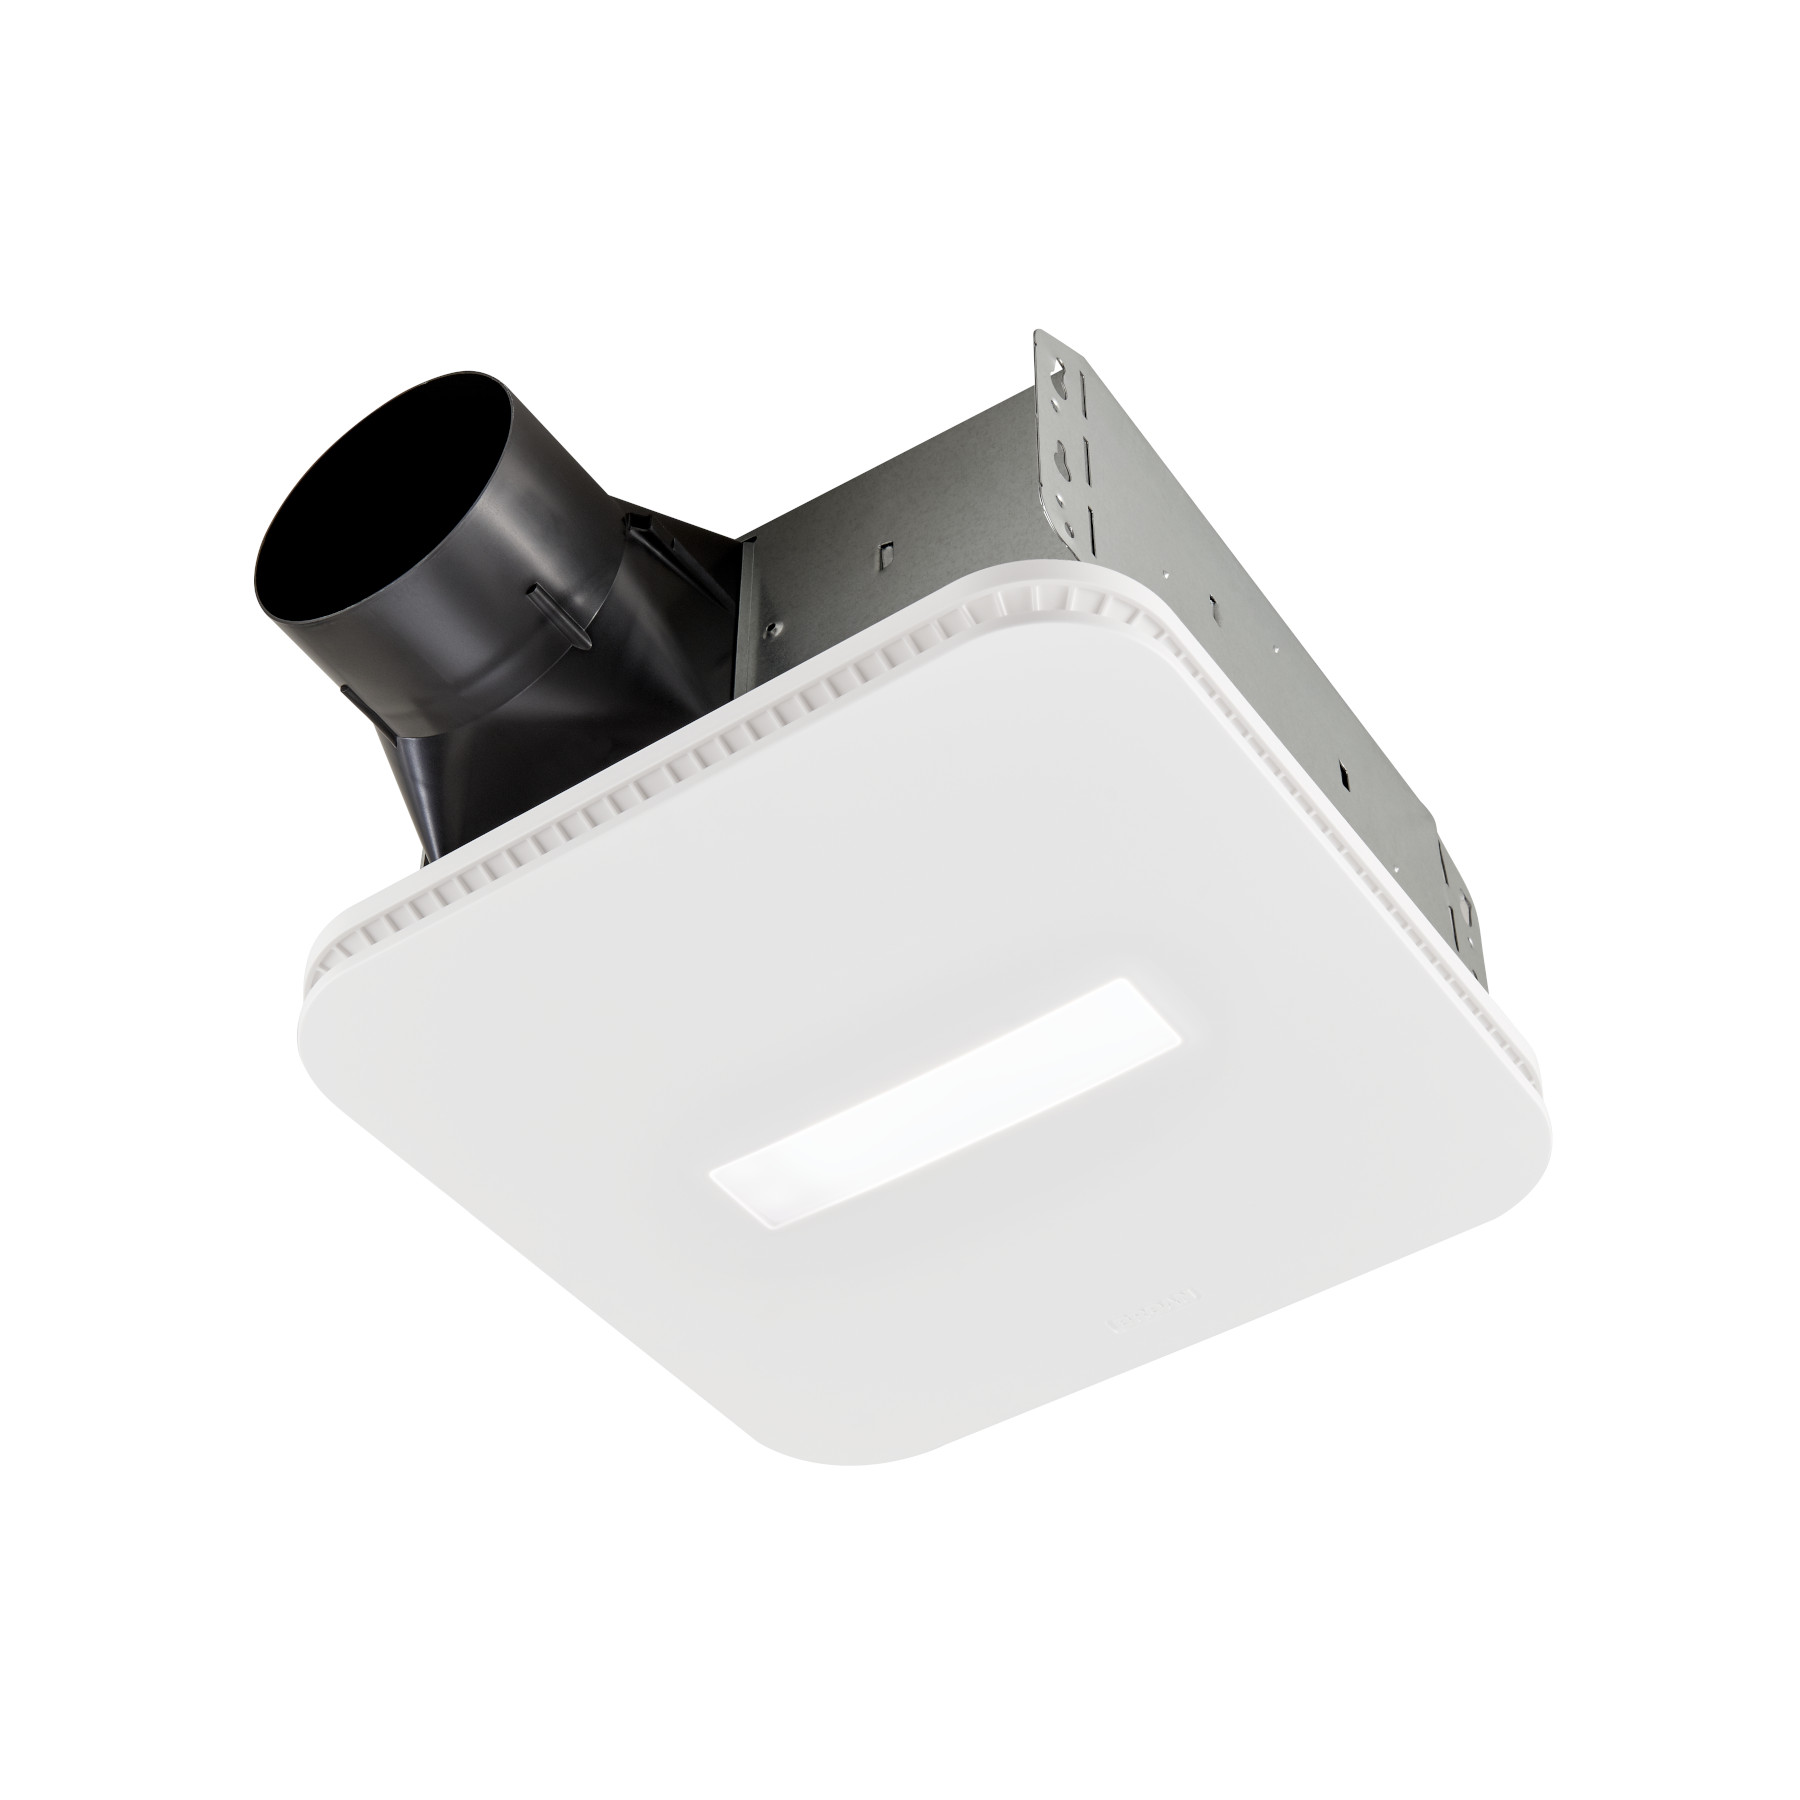 Ventilateur Broan® de série Roomside avec grille CleanCoverMC et éclairage à DEL, 80 pi3/min, 0,7 sone